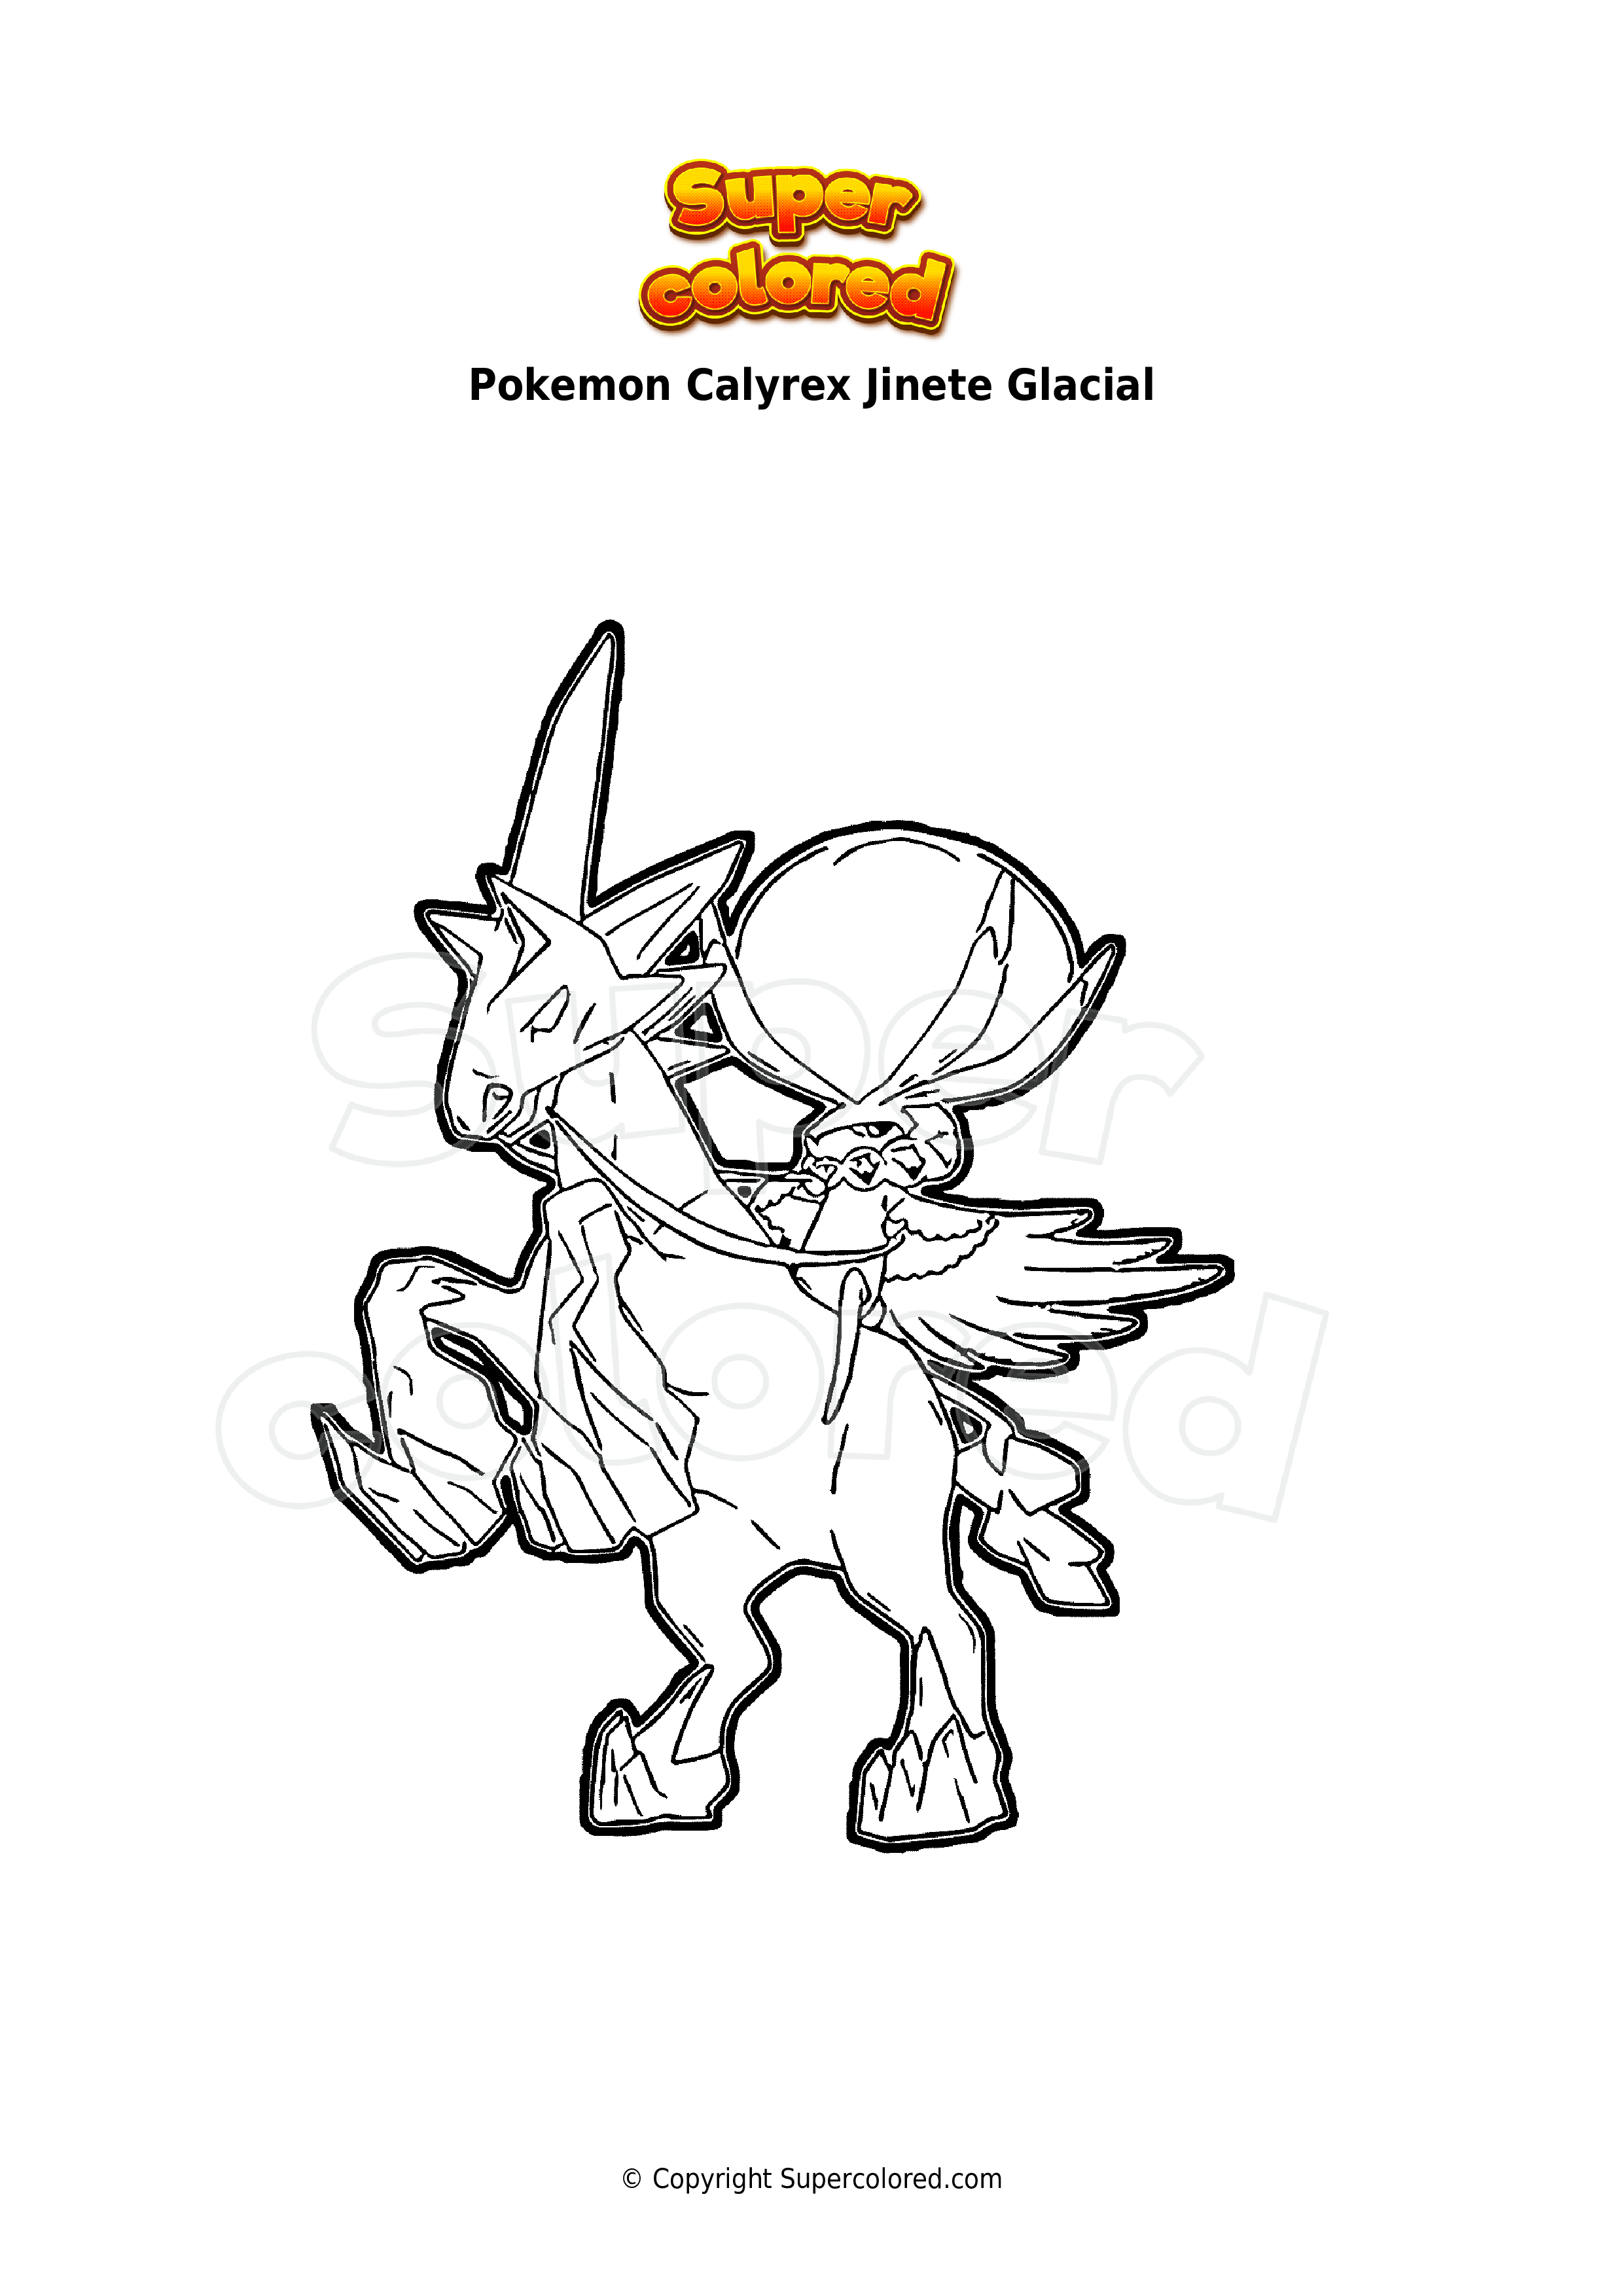 Calyrex montaria de gelo  Arte pokemon, Como desenhar pokemon, Pokemon